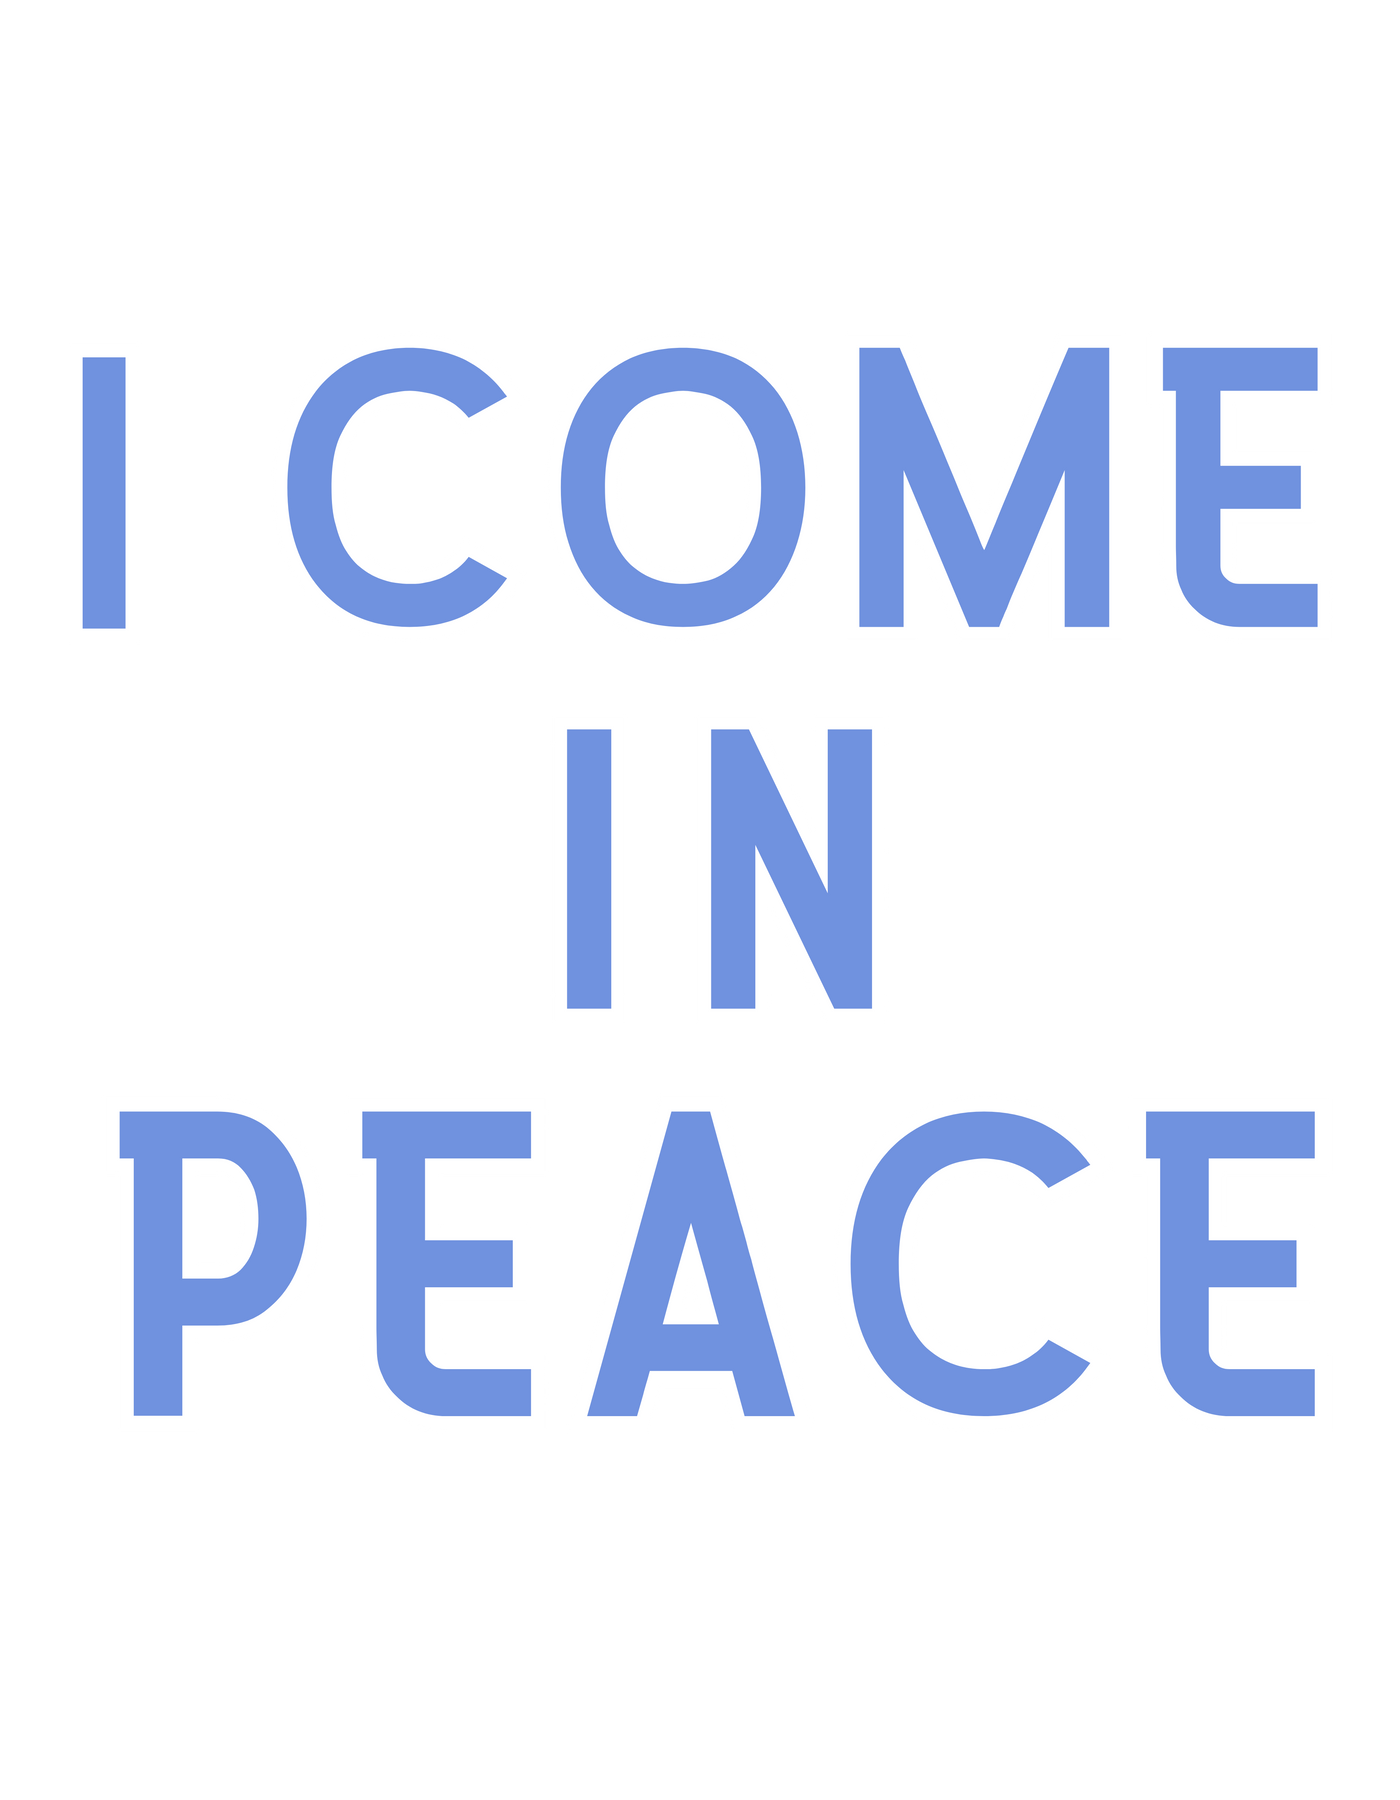 I Come in Peace